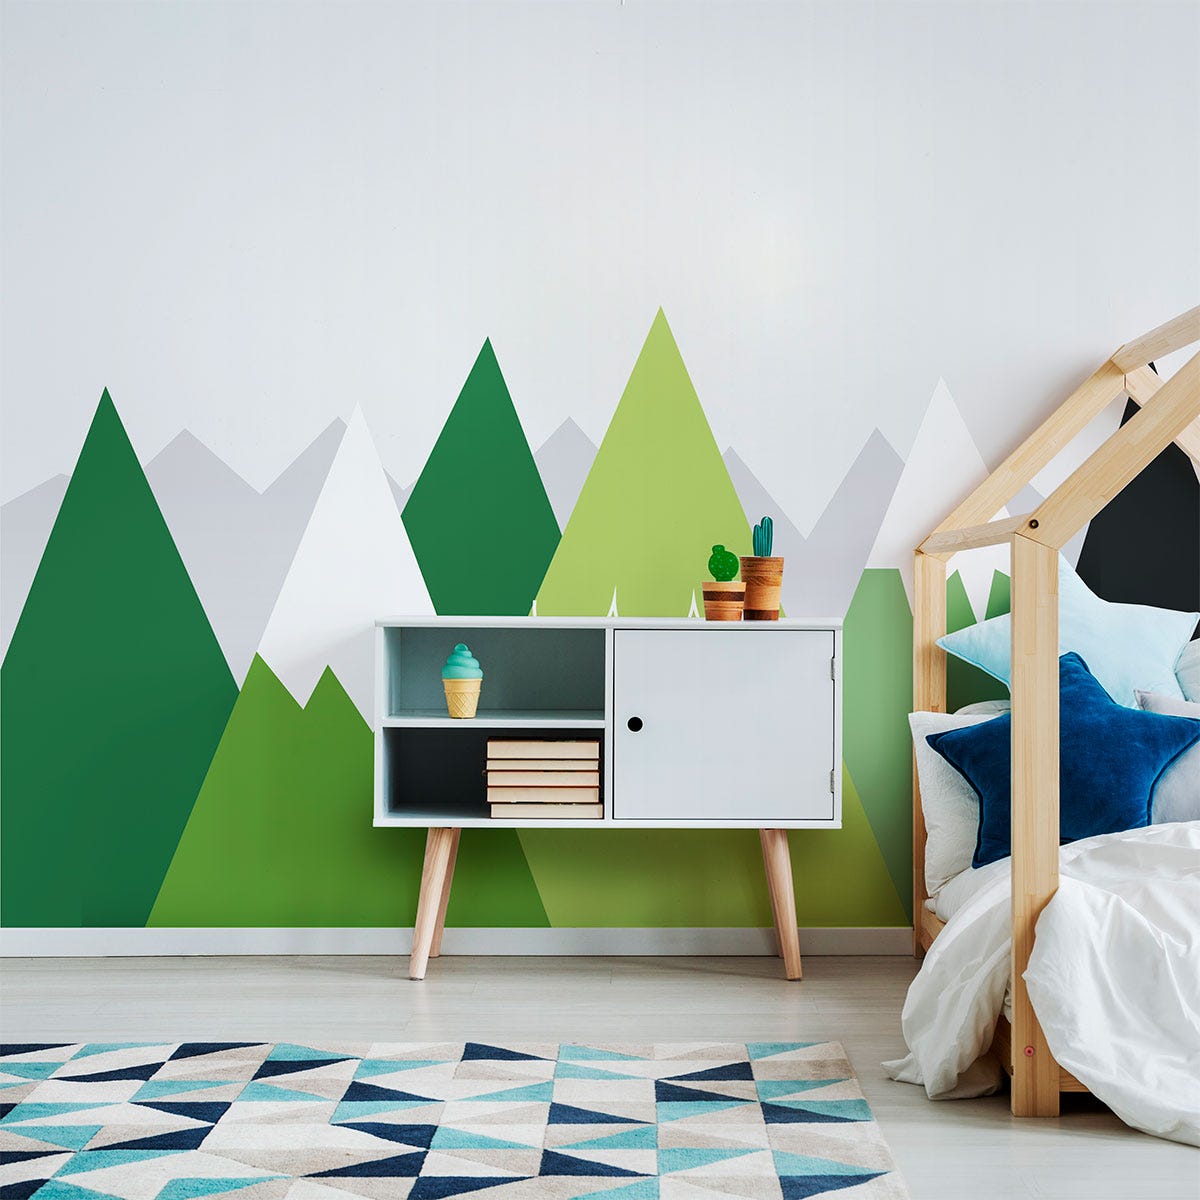 Décoration chambre d'enfant: Utiliser les tableaux pour embellir la chambre  de vos enfants